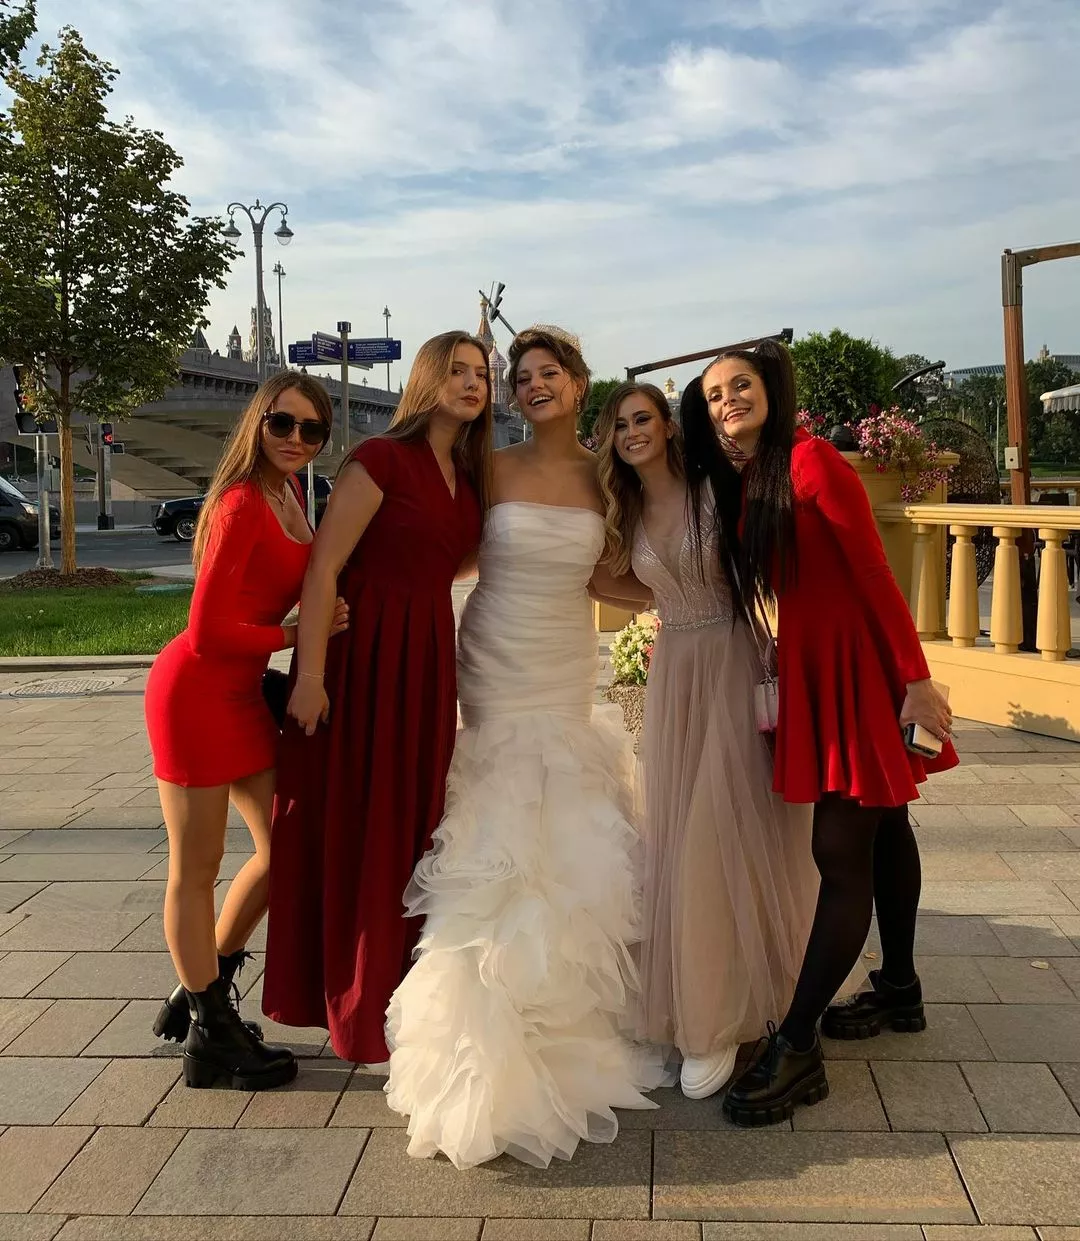 Моргенштерн в платье на свадьбе фото